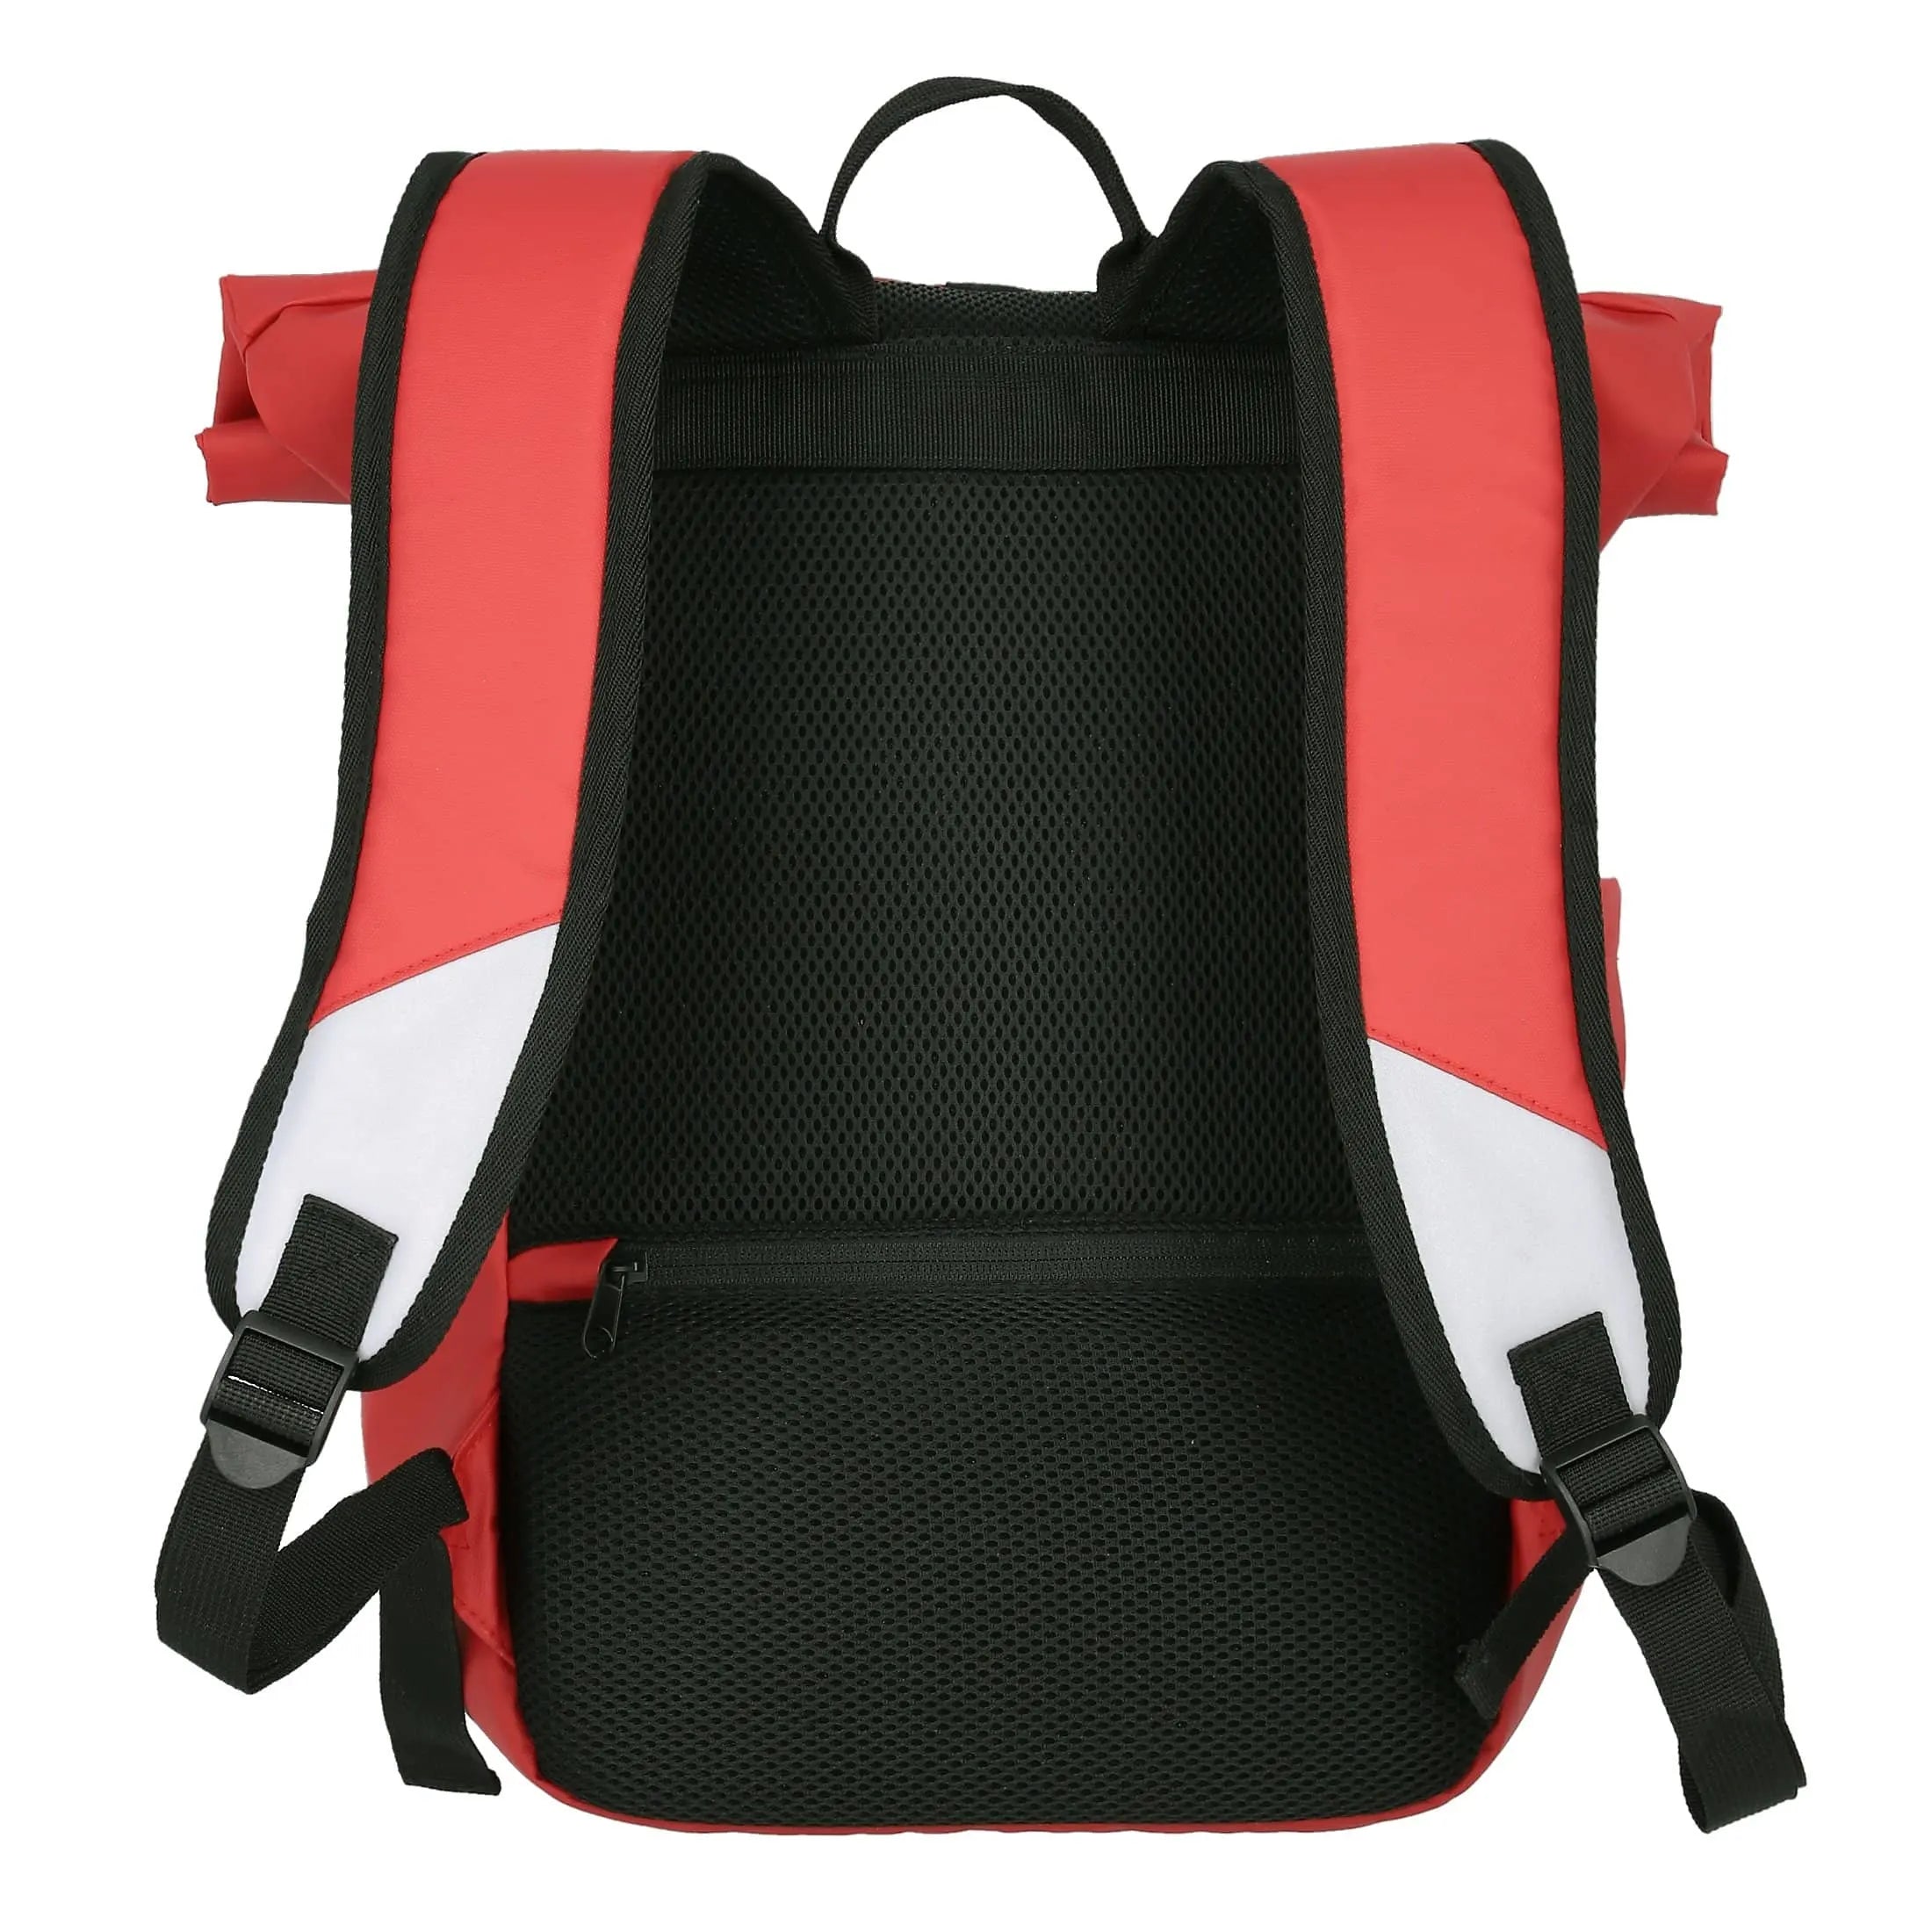 Bâche pour sac à dos enroulable Travelite Basics 48 cm - Lilas